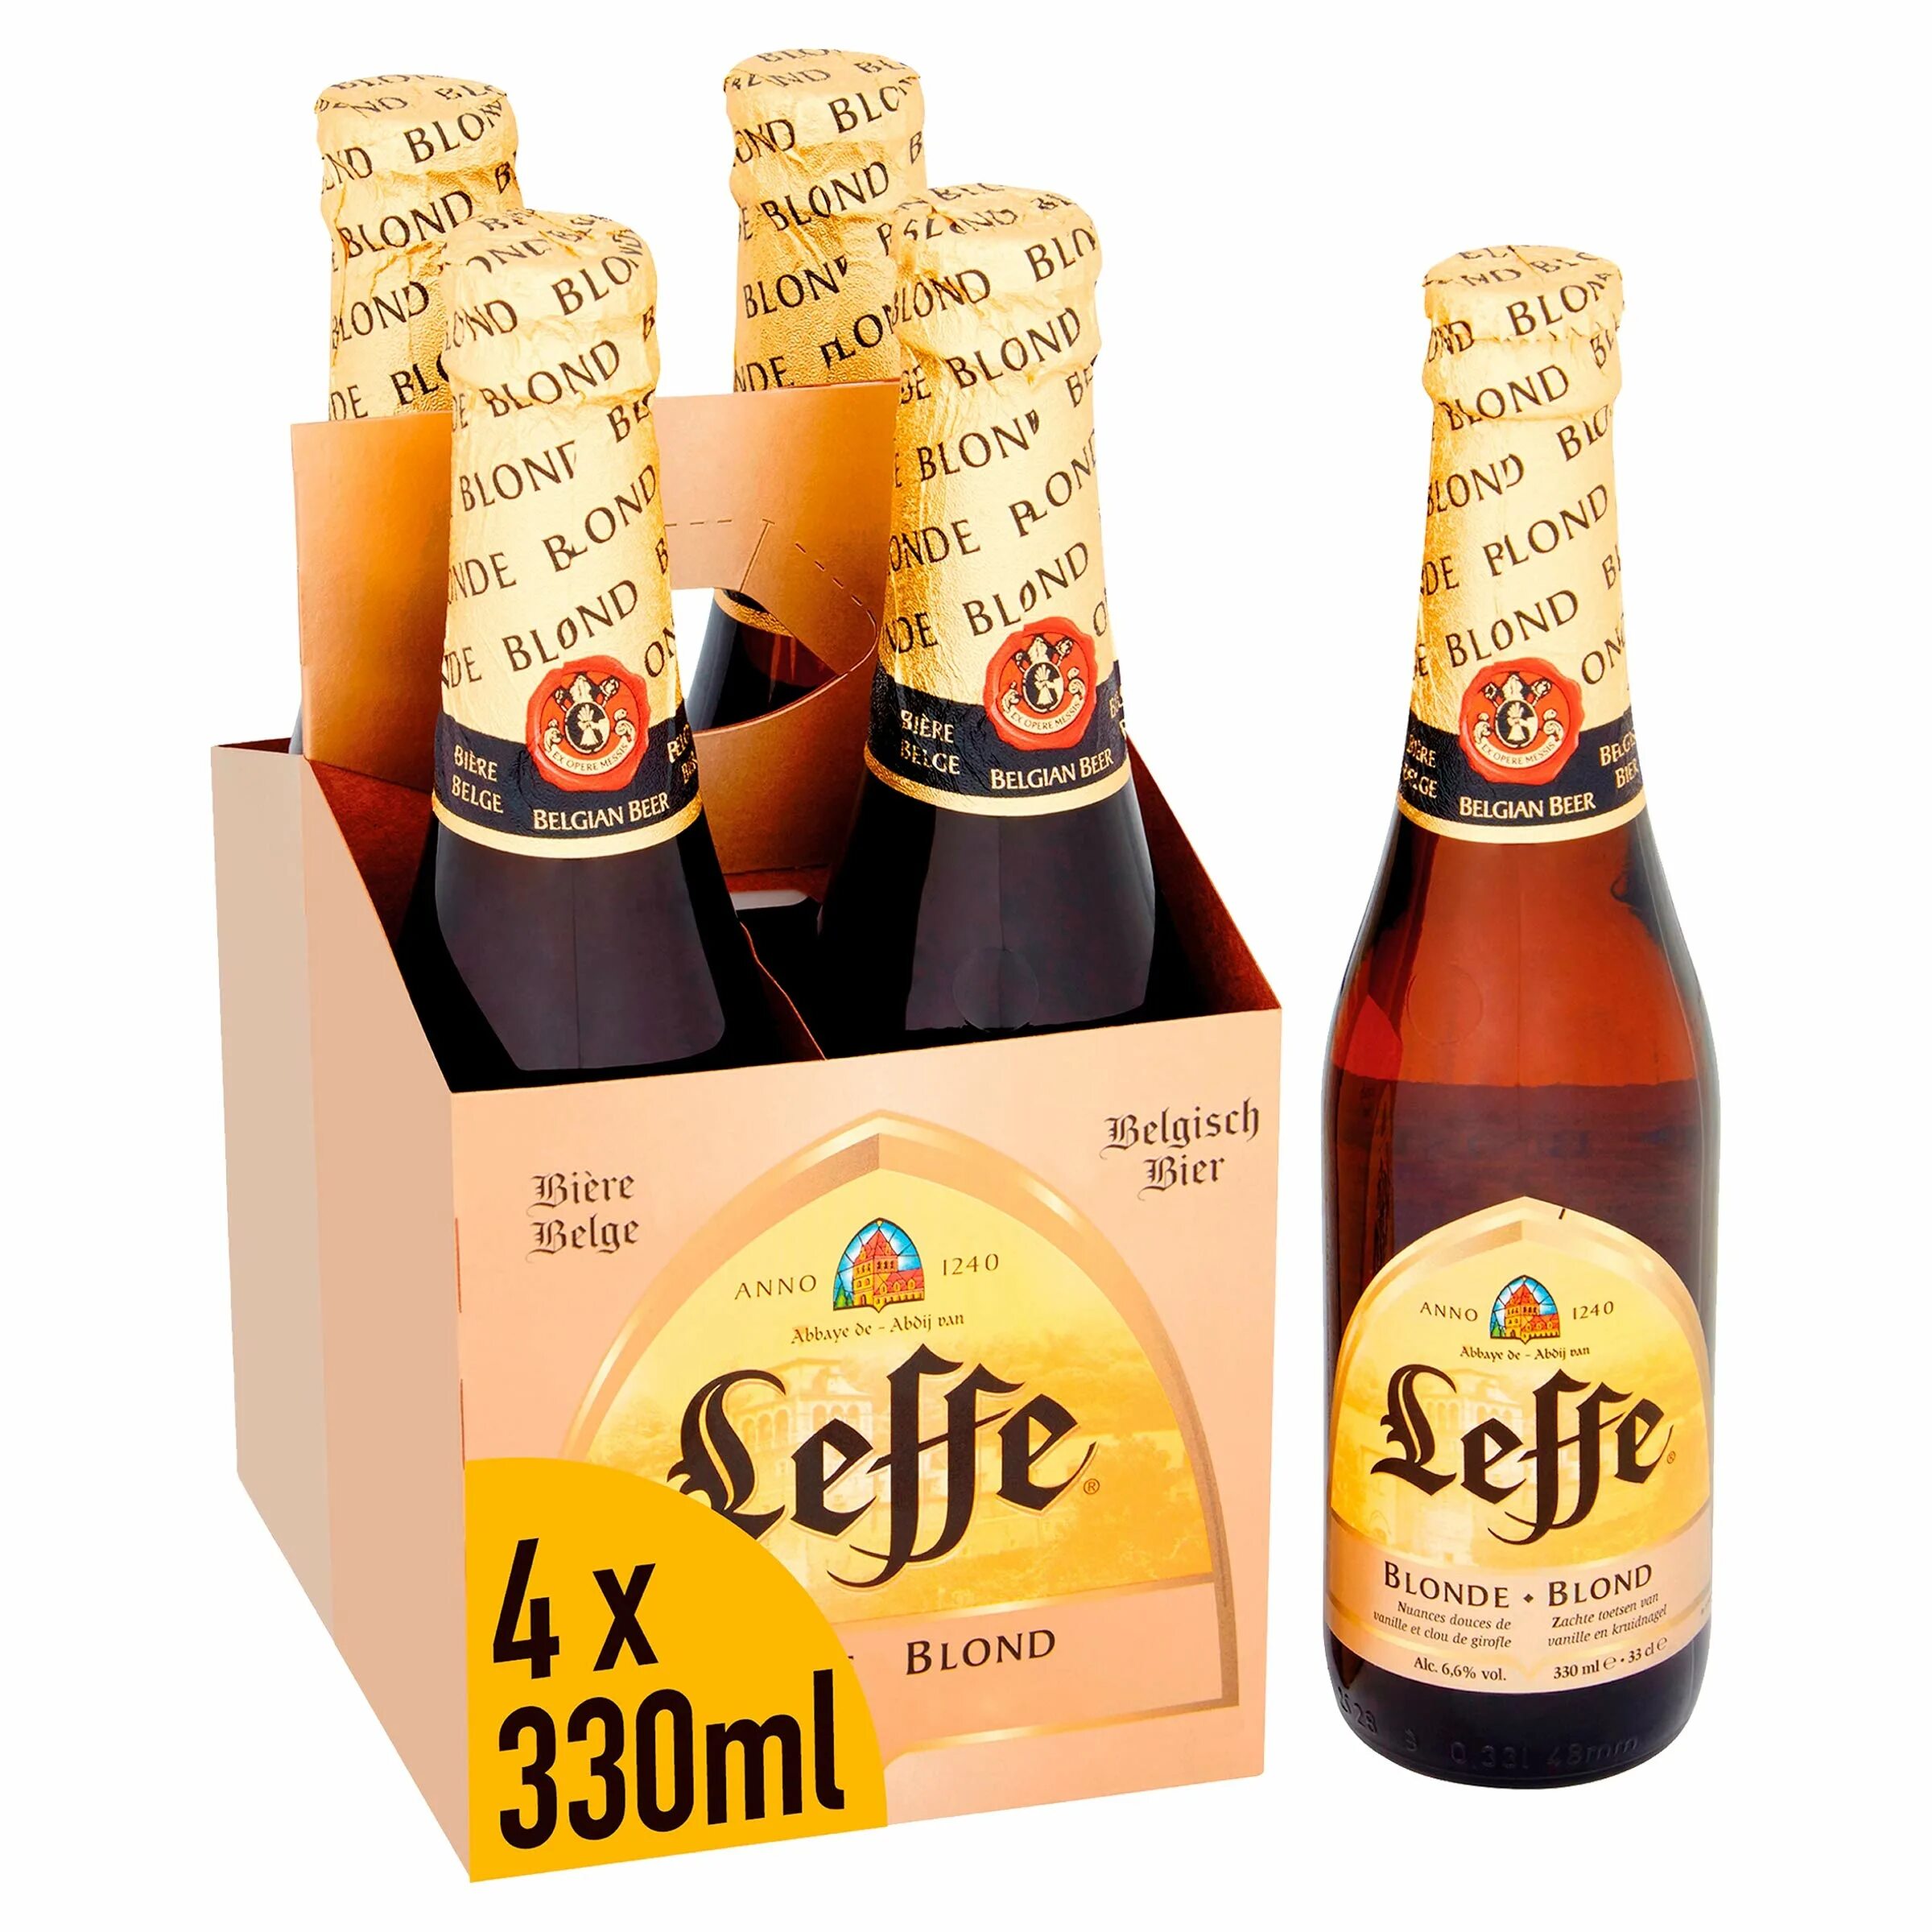 Leffe blonde. Бельгийское пиво Leffe blonde. Бельгийское пиво Леффе блонд. Пиво Леффе Бельгия. Пиво бельгийское темное Leffe.